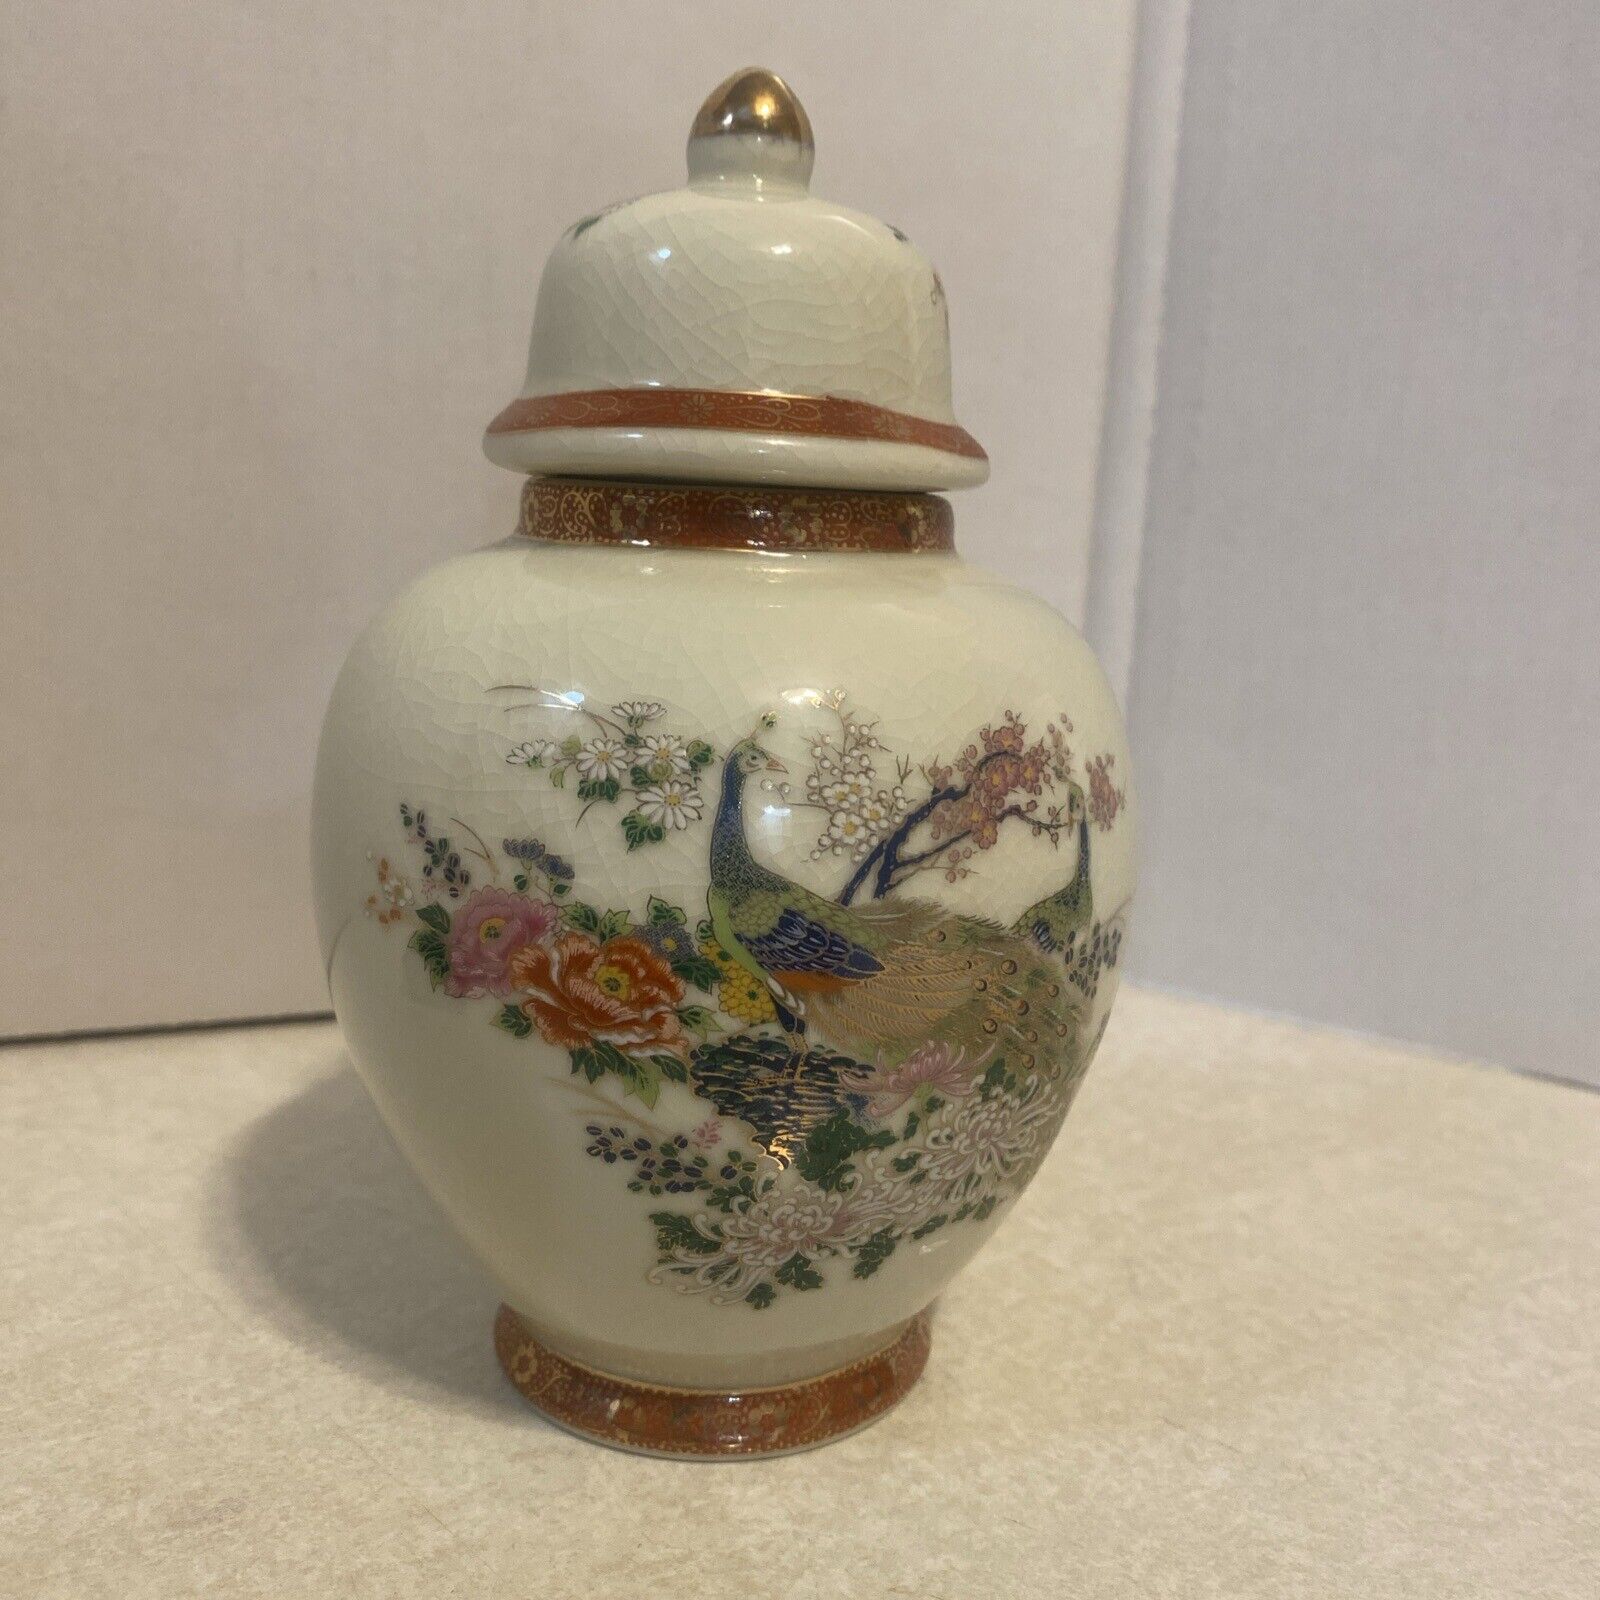 Vintage Japan Satsuma Porcelain Ginger Jar Vase Urn Peacock Cherry Blossom Gold